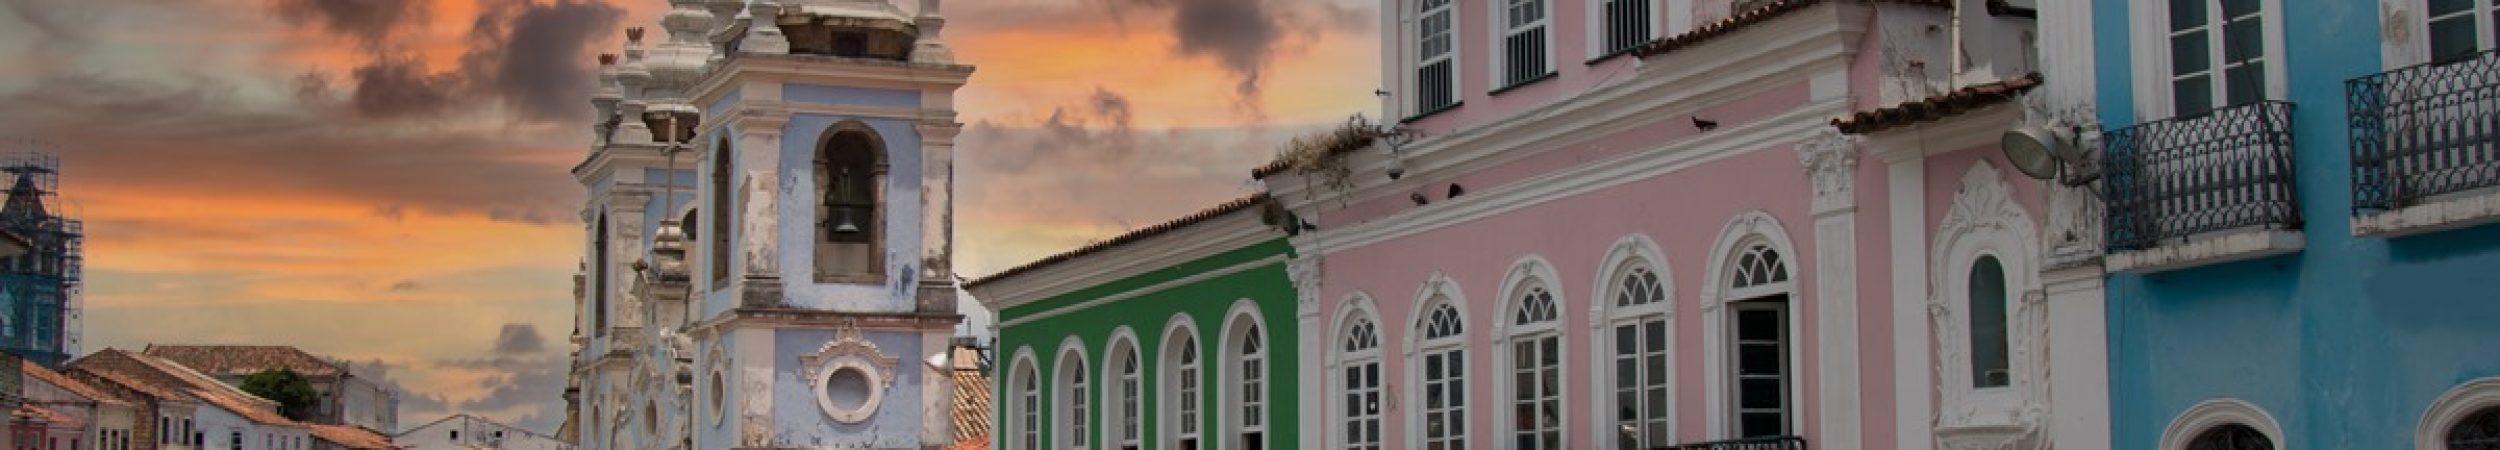 Pelourinho Historic Center of the city of Salvador Bahia Brazil.